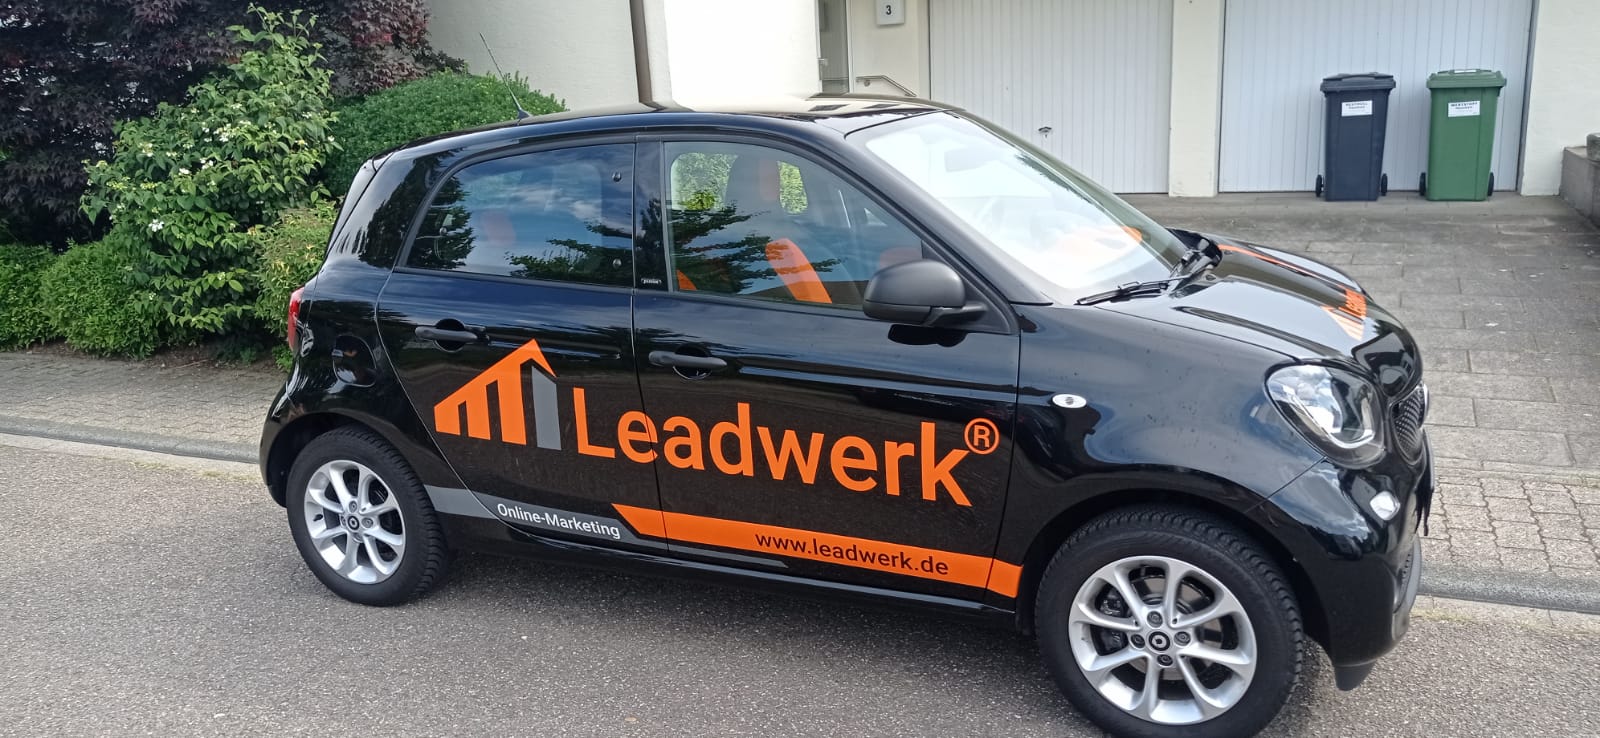 Leadwerk Smart